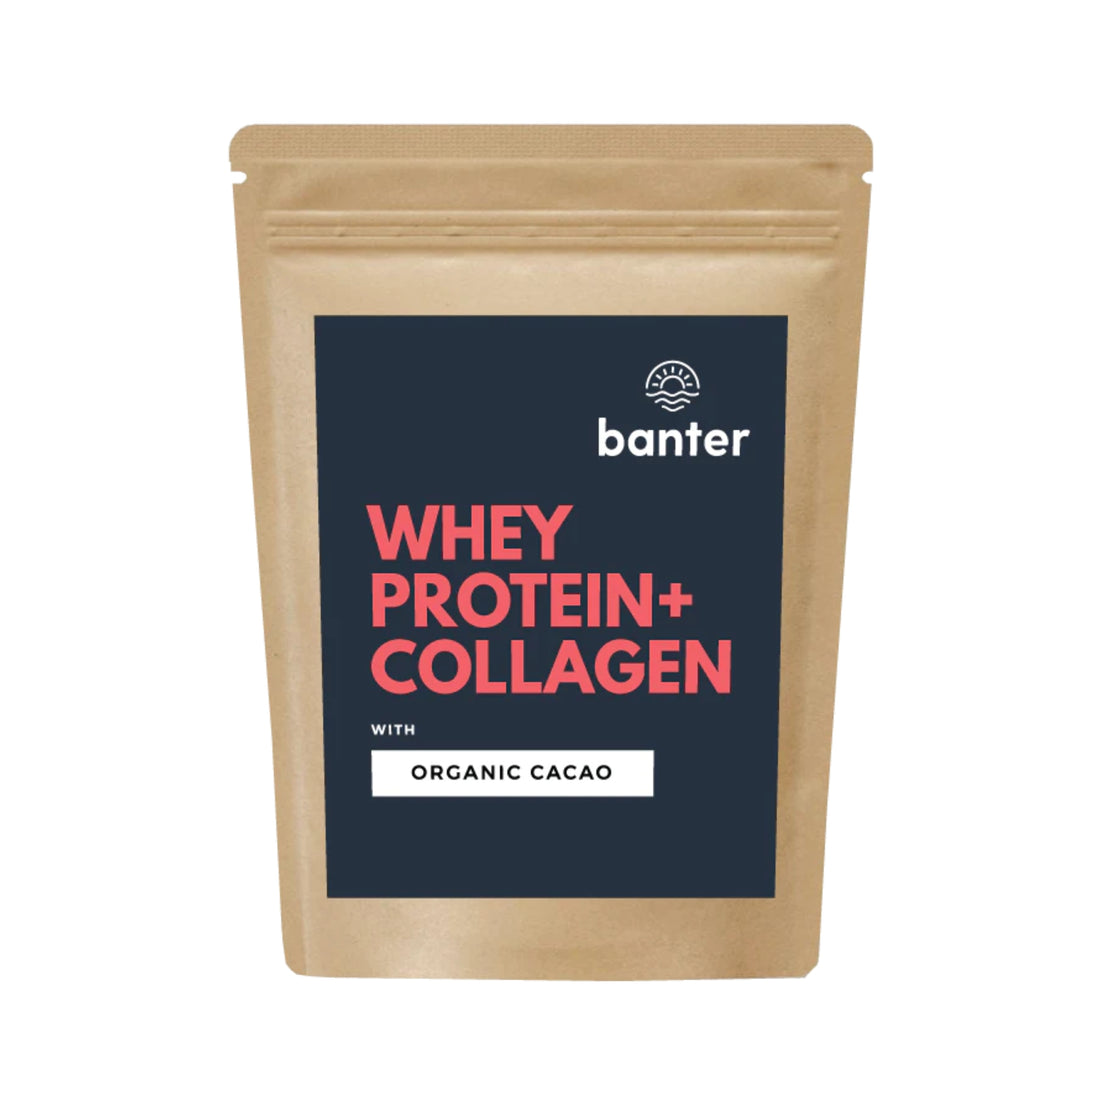 Banter Whey Protein + Collagen